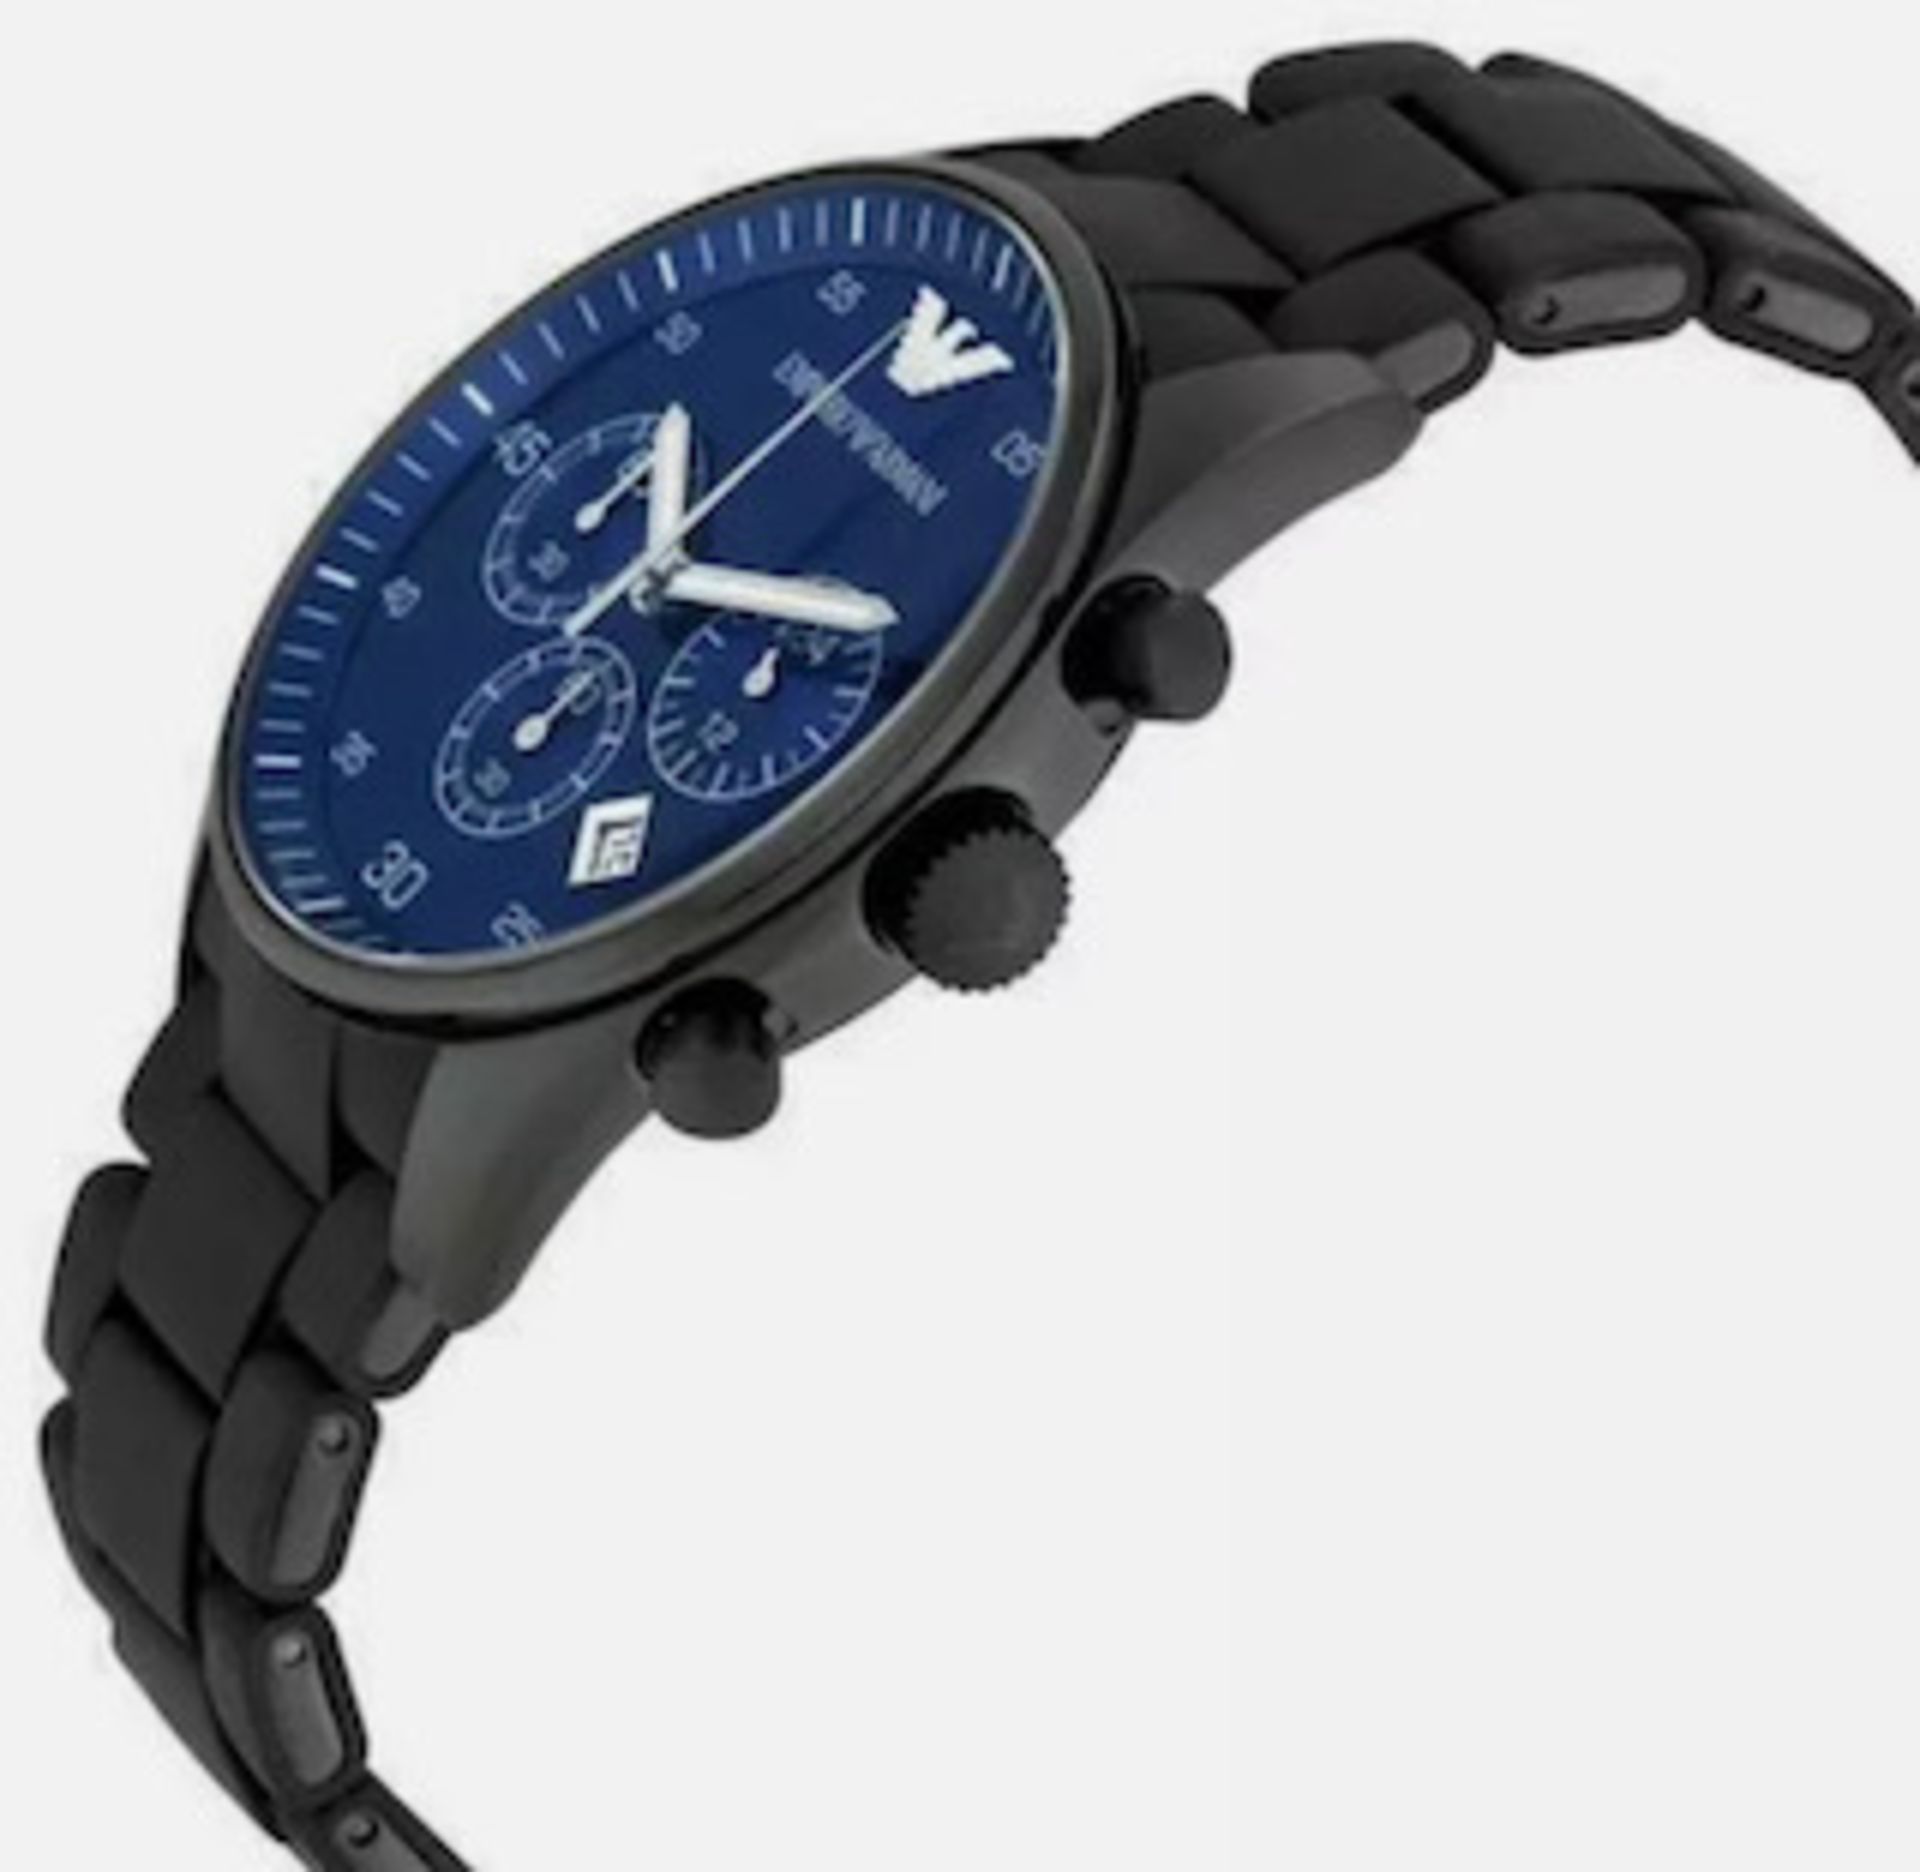 Emporio Armani AR5921 Men's Sportivo Blue Dial Quartz Chronograph Watch - Image 3 of 7